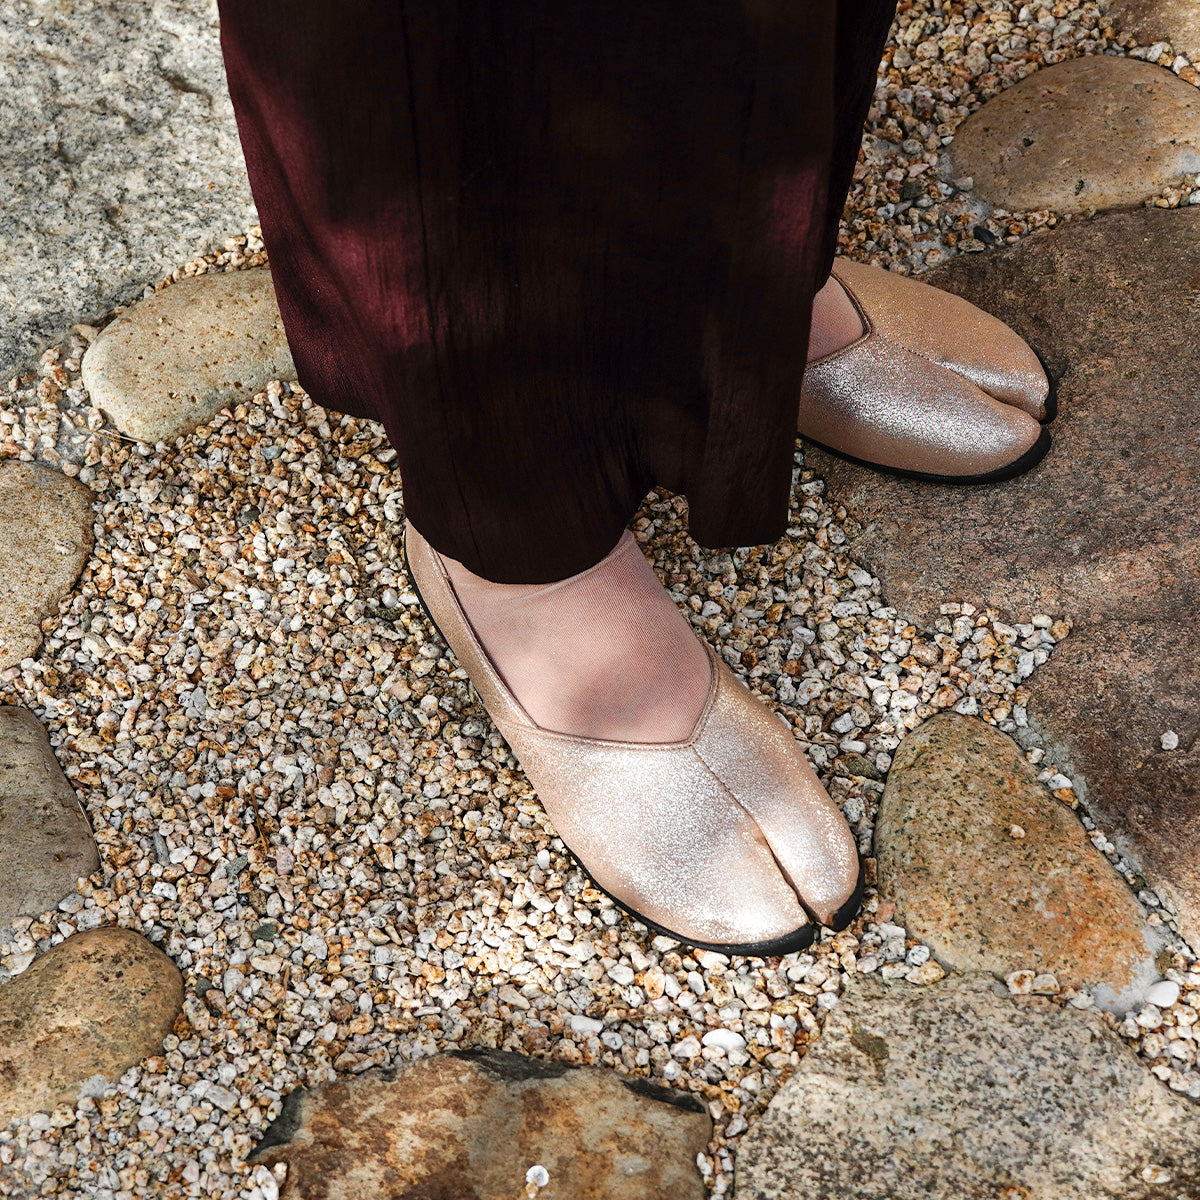 足に優しい足袋パンプスMARY（マリー）。made in 倉敷。 – MARUGO Wellness